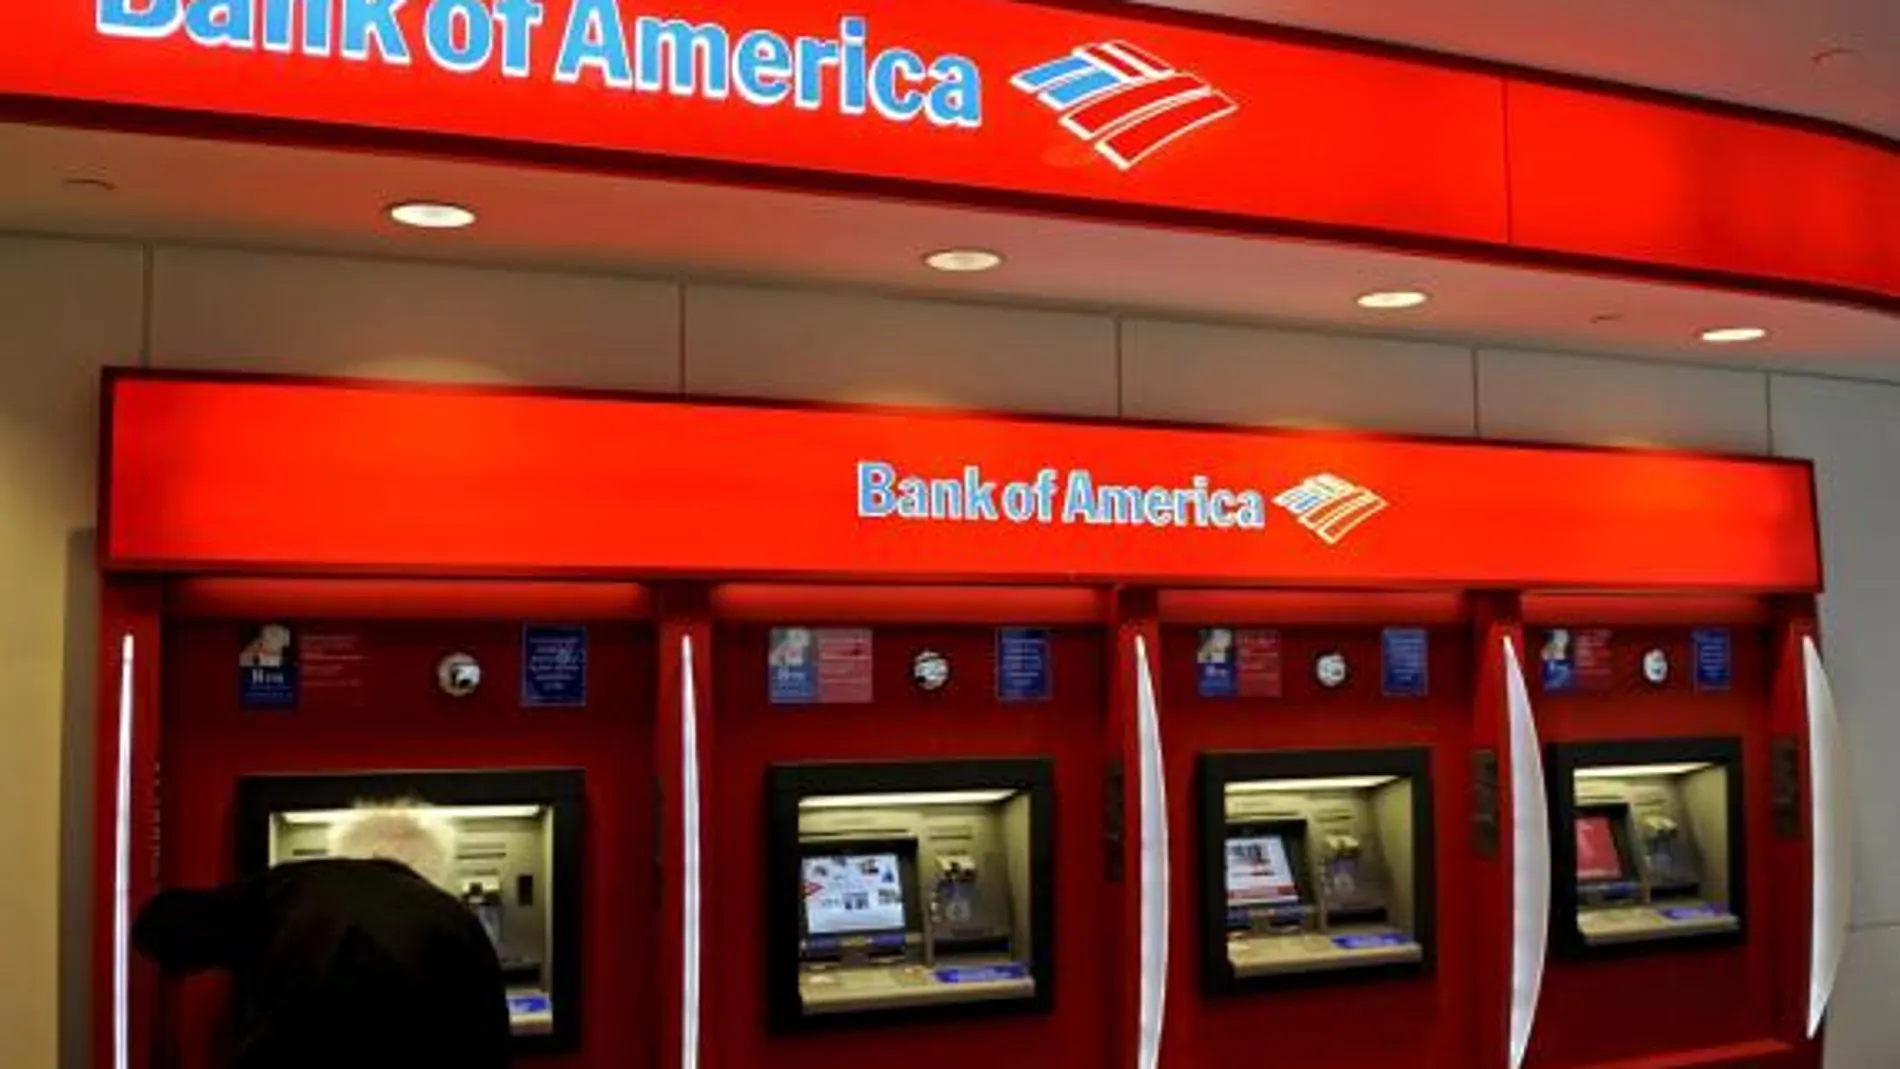 Bank of America acaba con seis semanas de subidas en los mercados